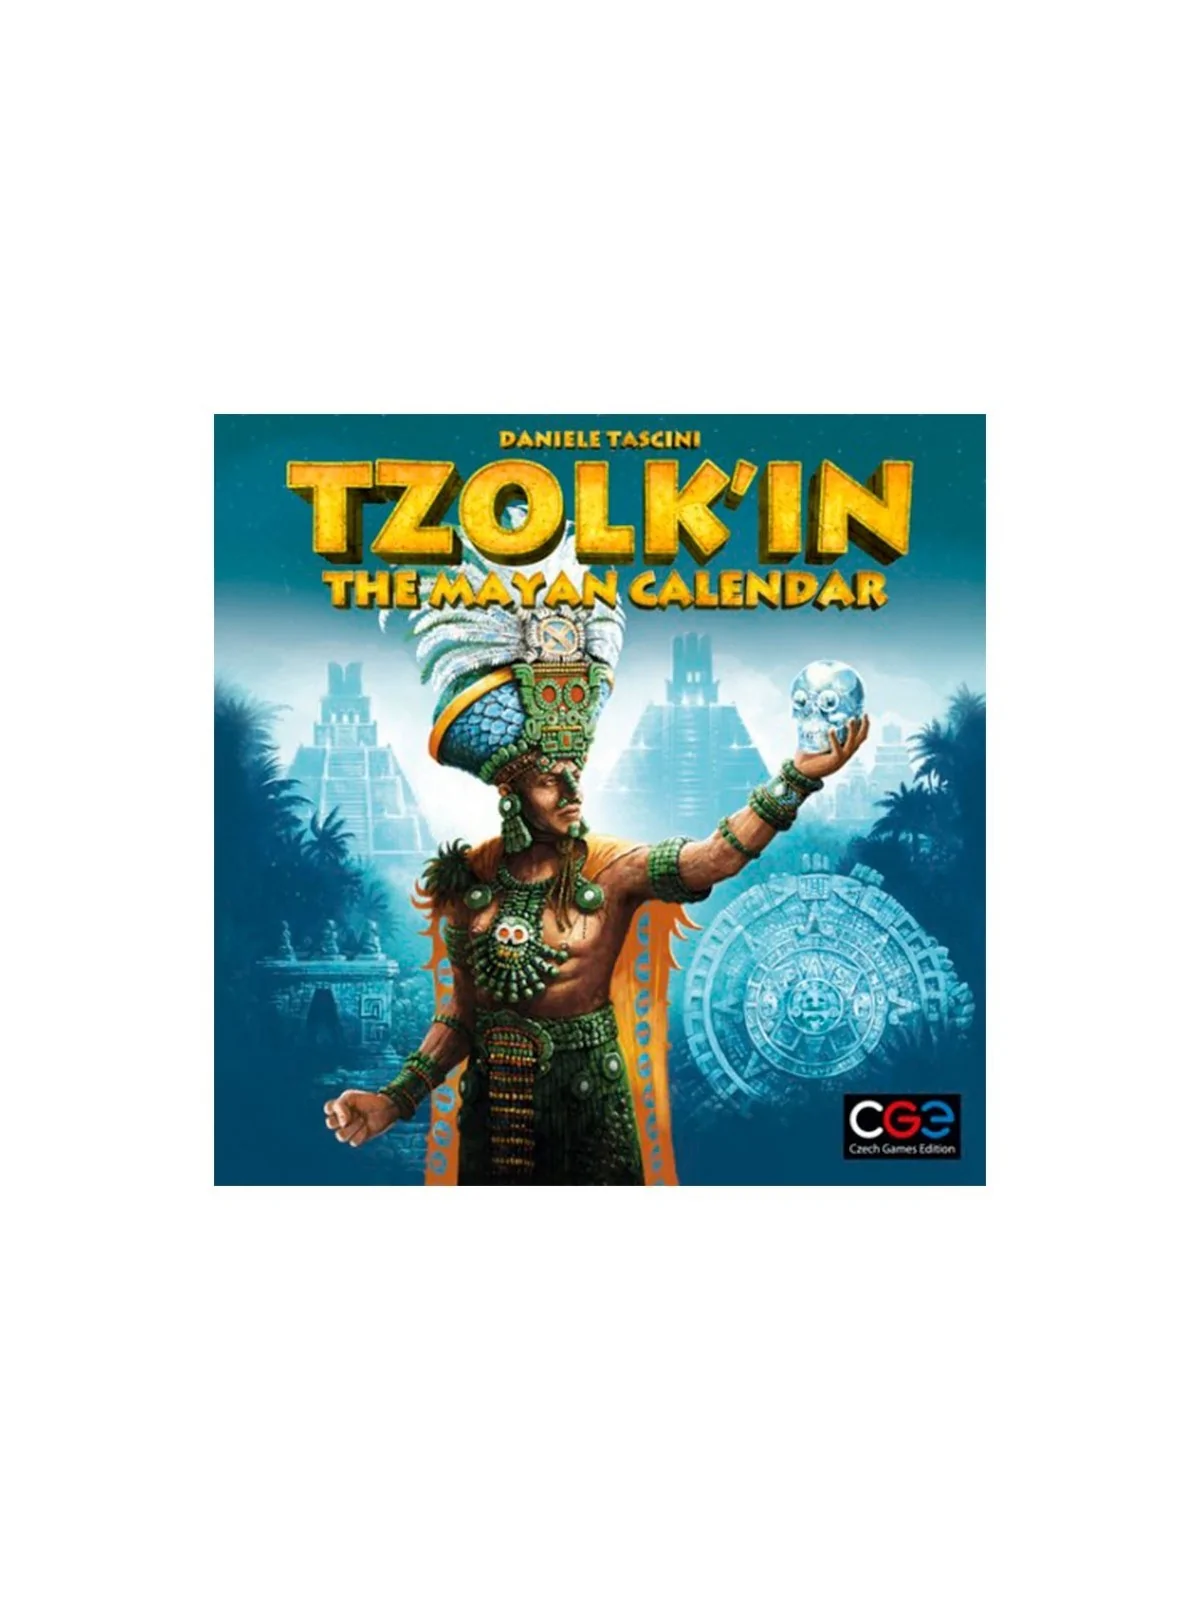 Comprar Tzolk'in: The Mayan Calendar (Inglés) barato al mejor precio 3